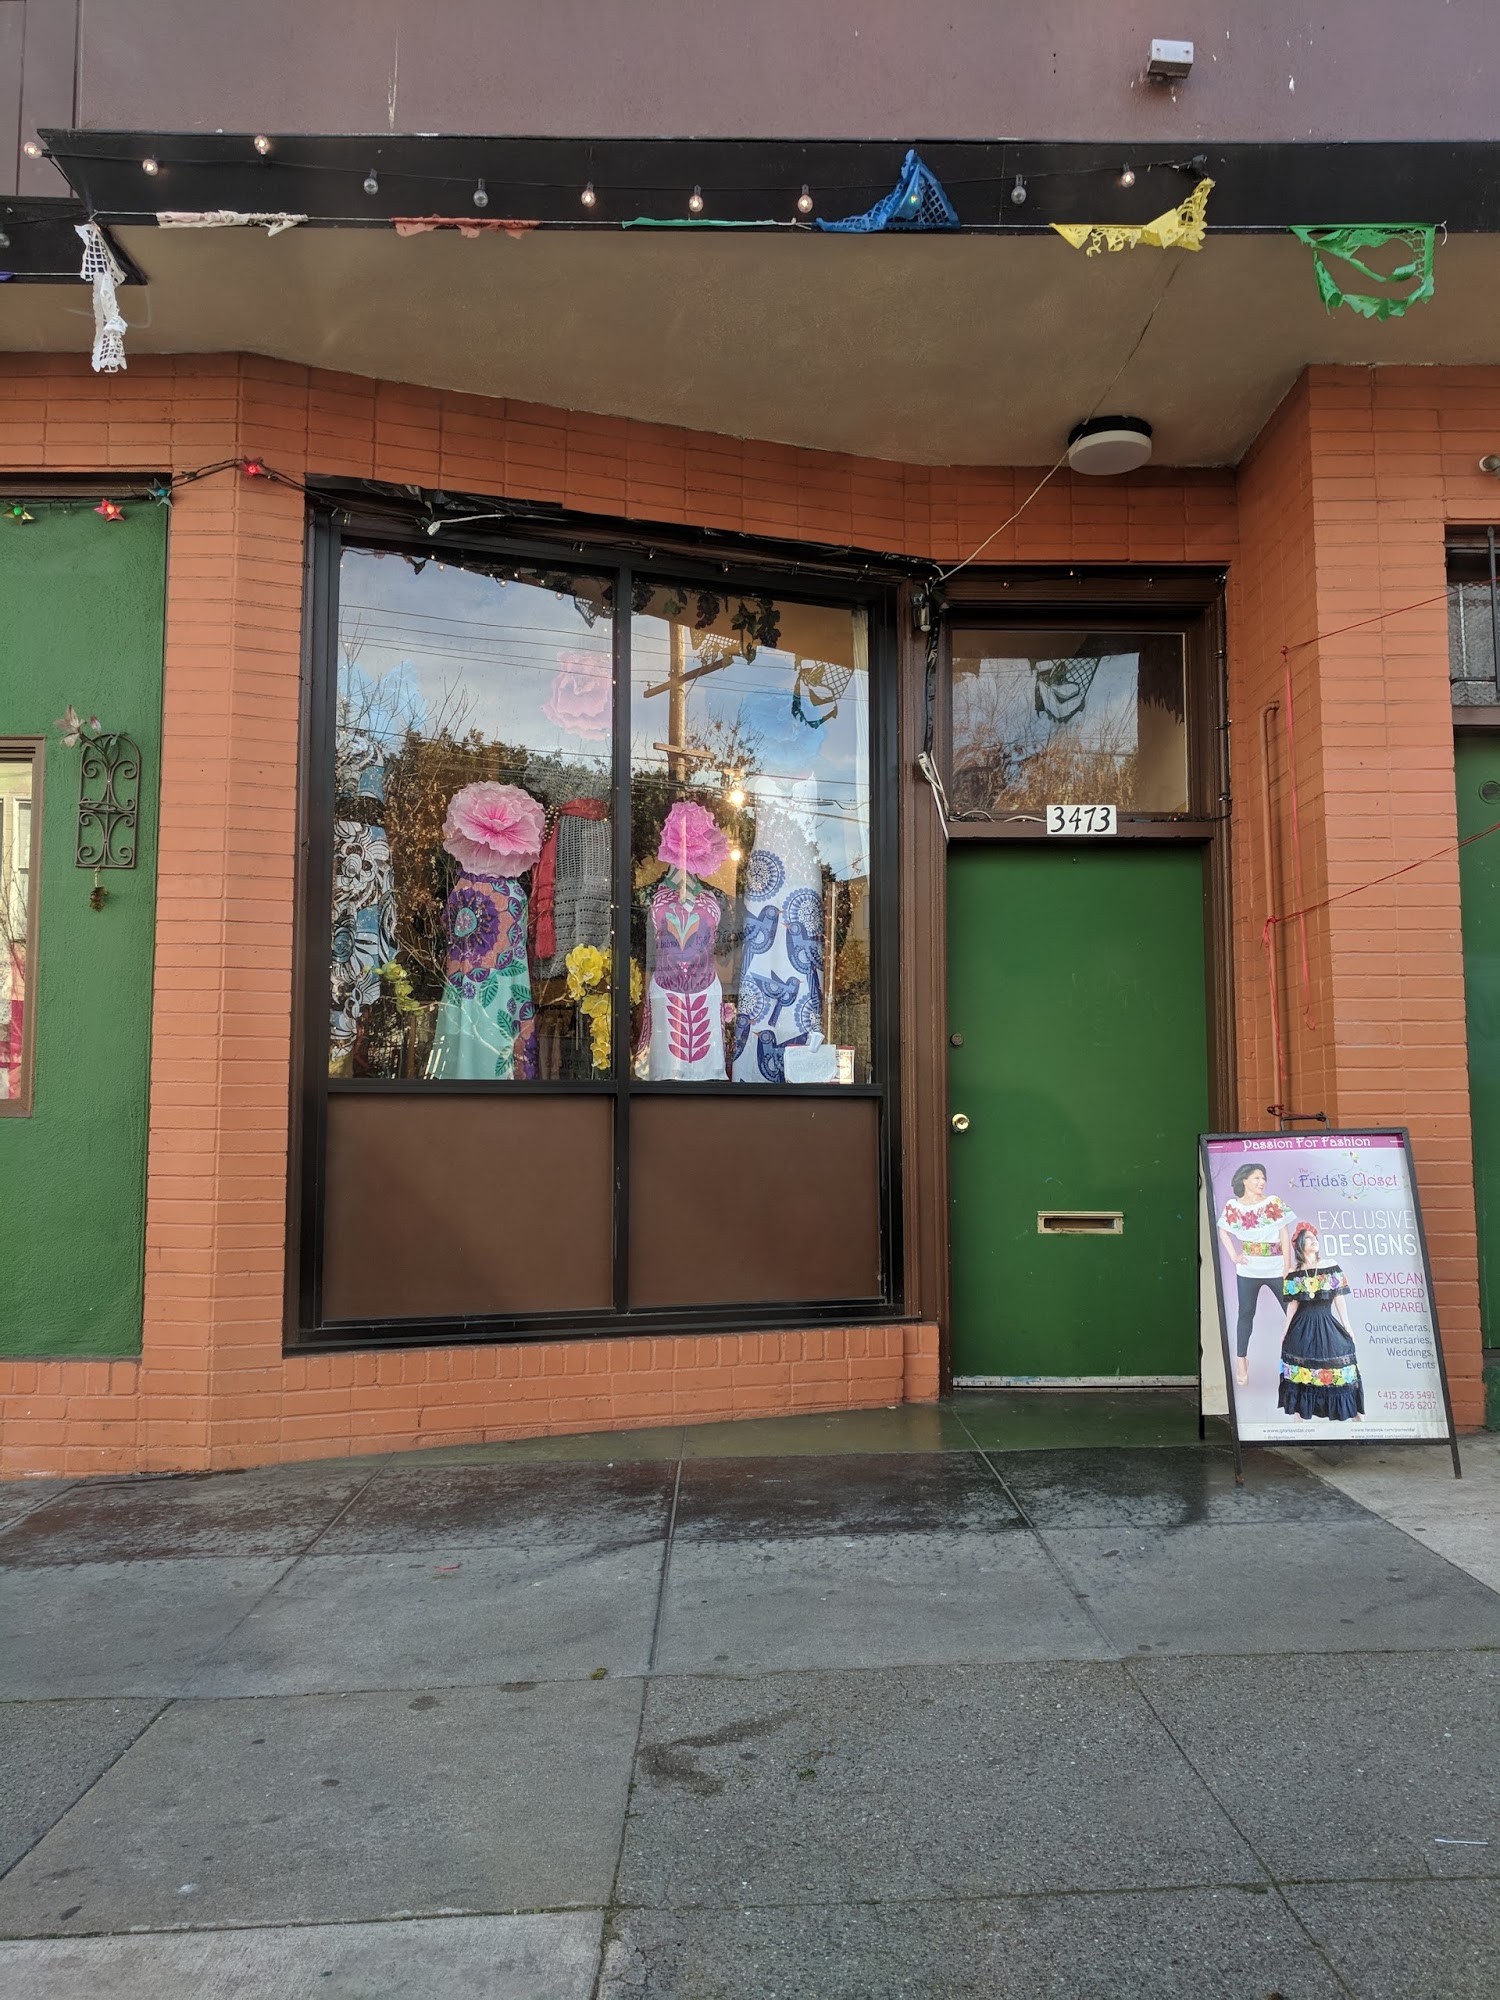 The Frida's Closet SF